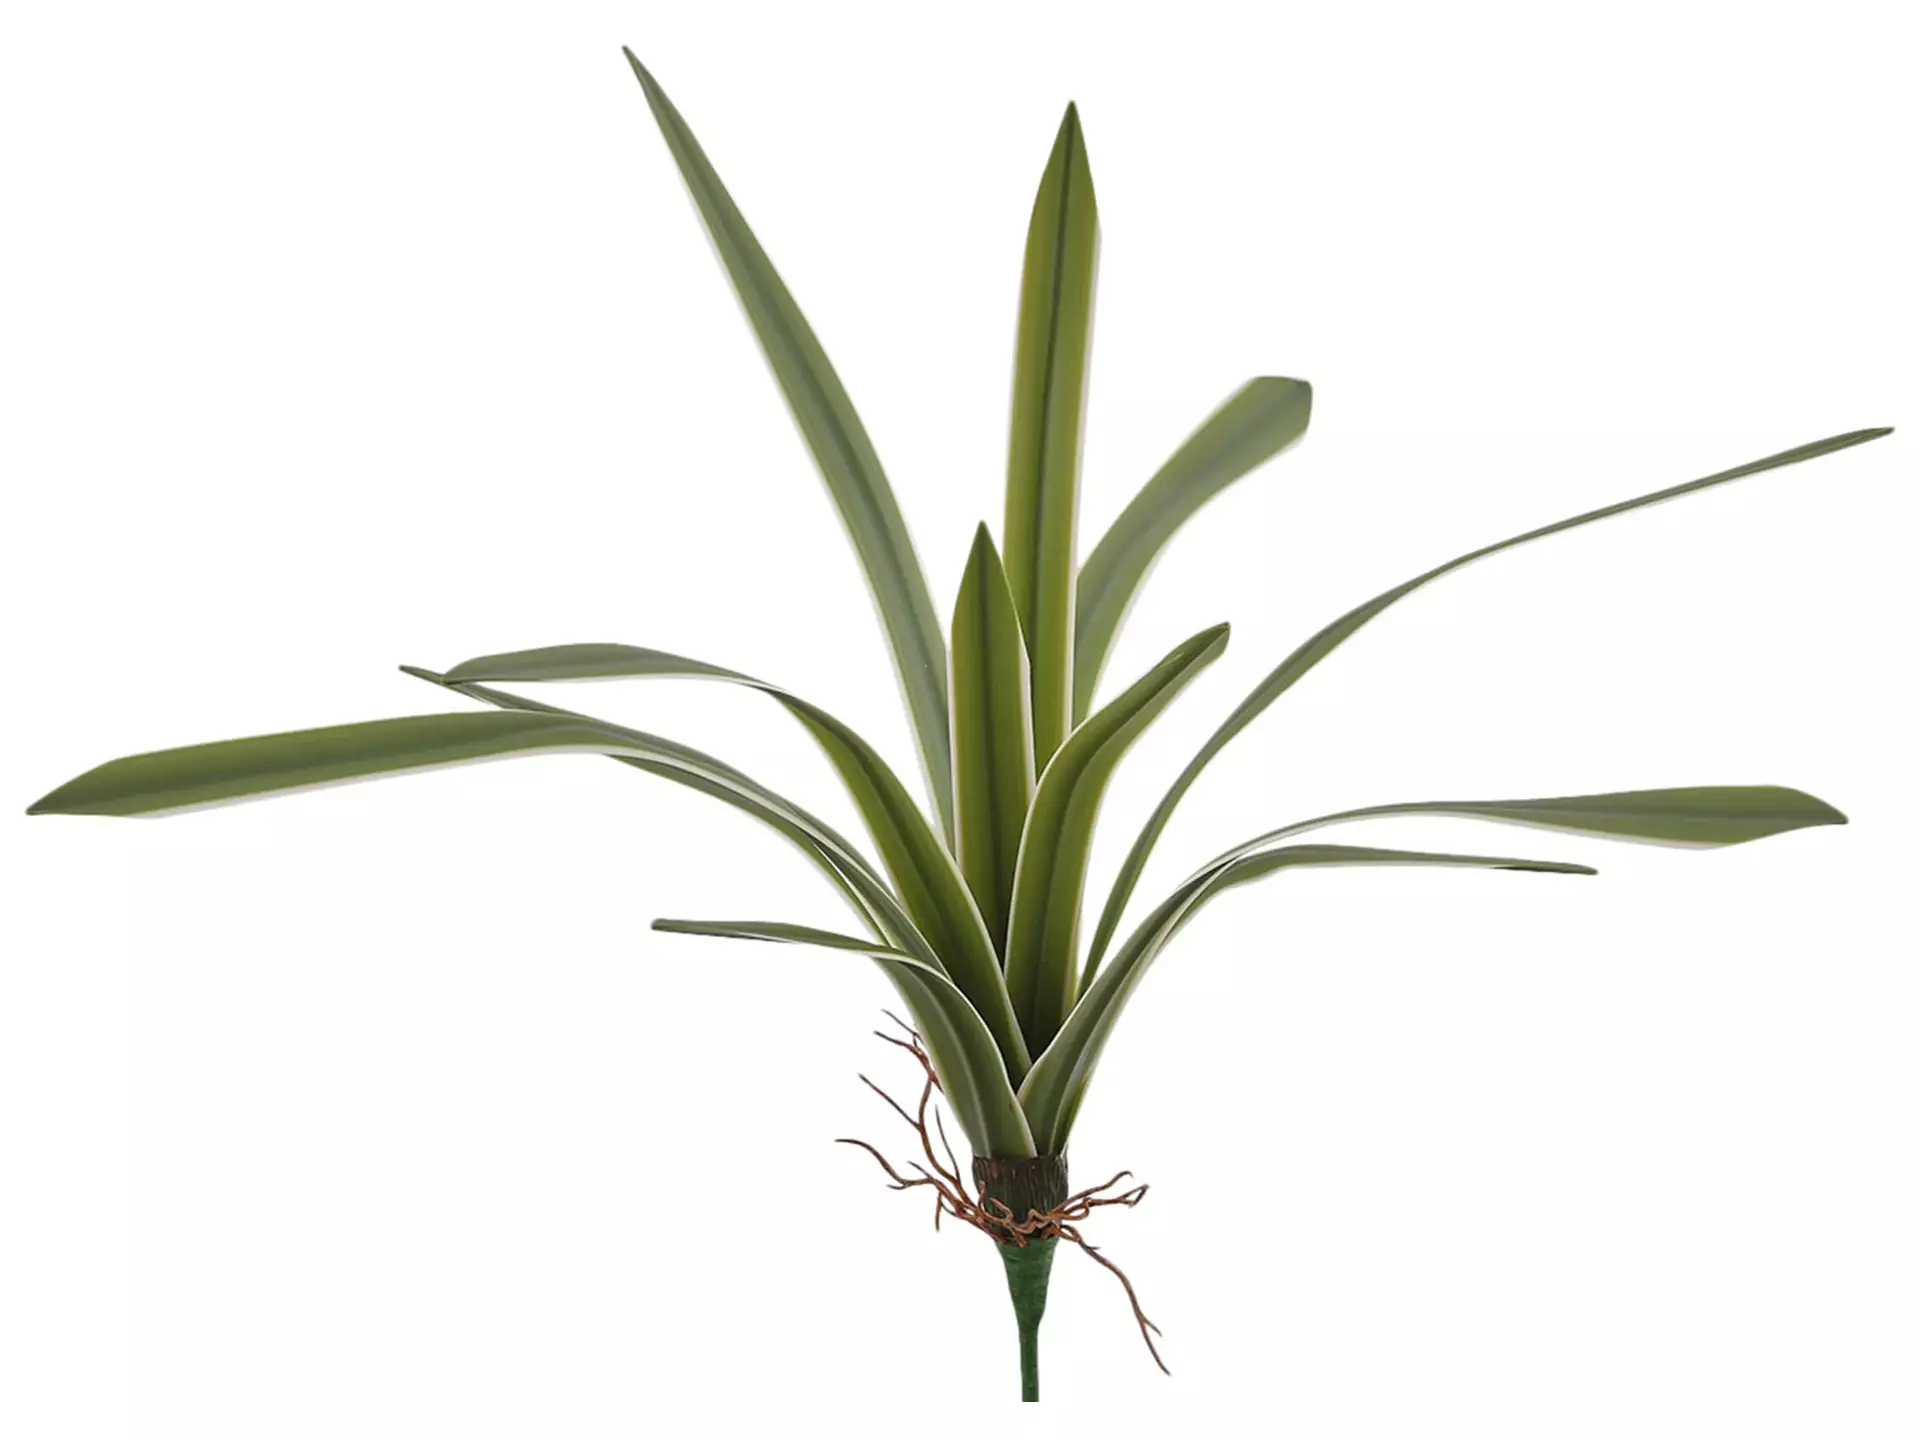 Kunstblume Chlorophytum Weiss-Grün H: 51 cm Edg